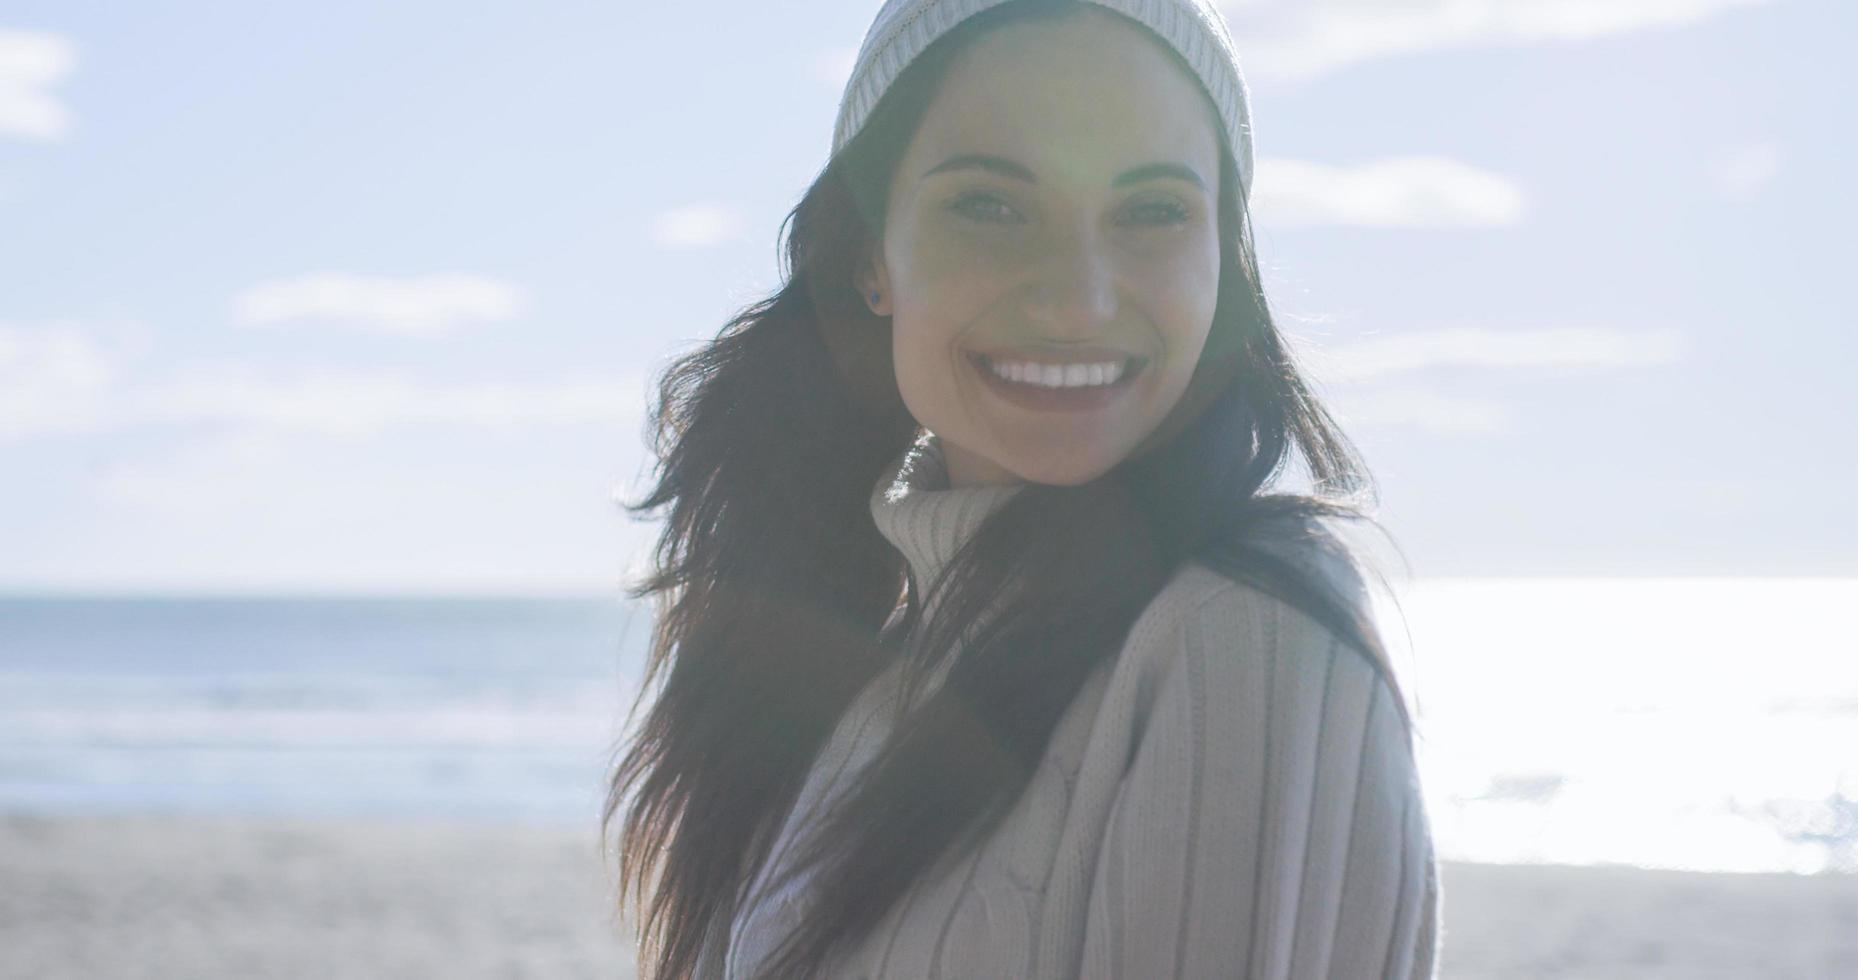 garota com roupas de outono sorrindo na praia foto